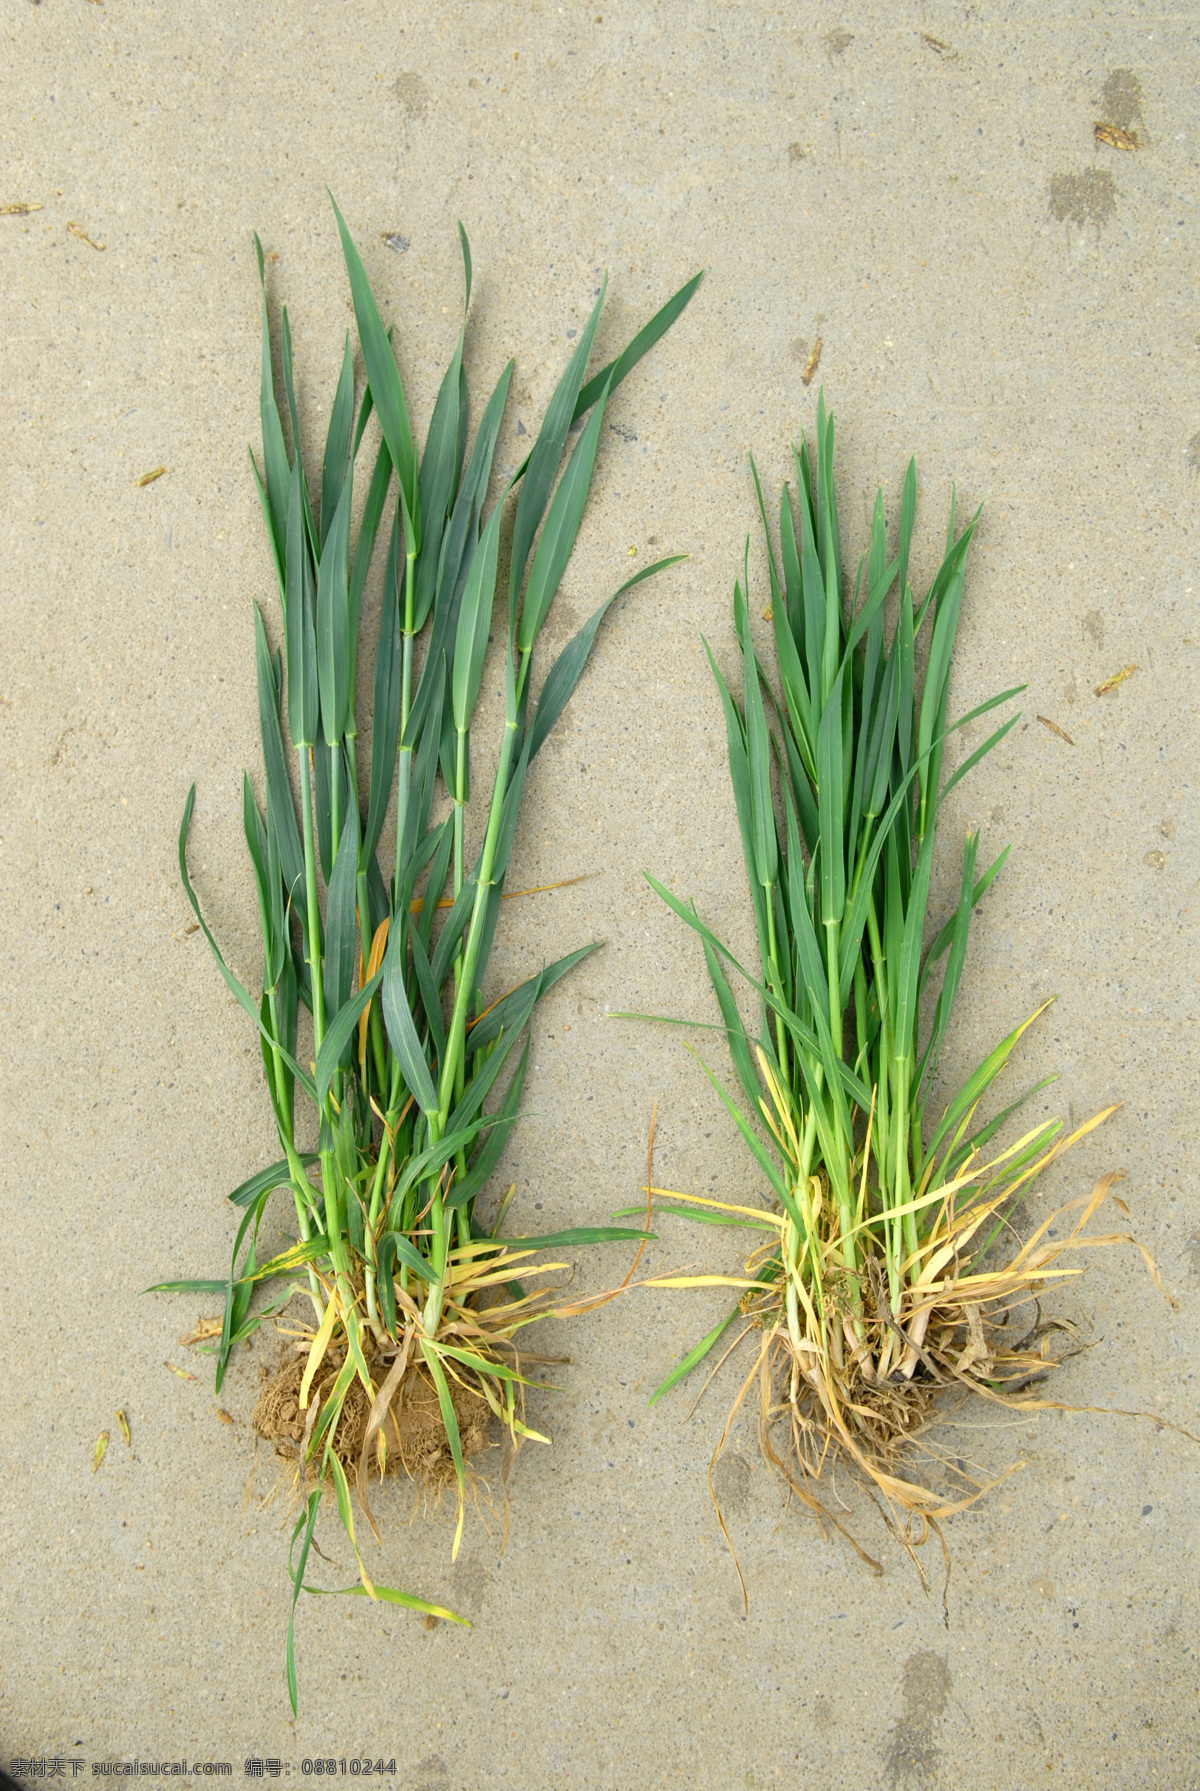 小麦对比 小麦长势 对比试验 根系发达 植株健壮 复合肥 肥料 农作物摄影 生物世界 其他生物 黄色